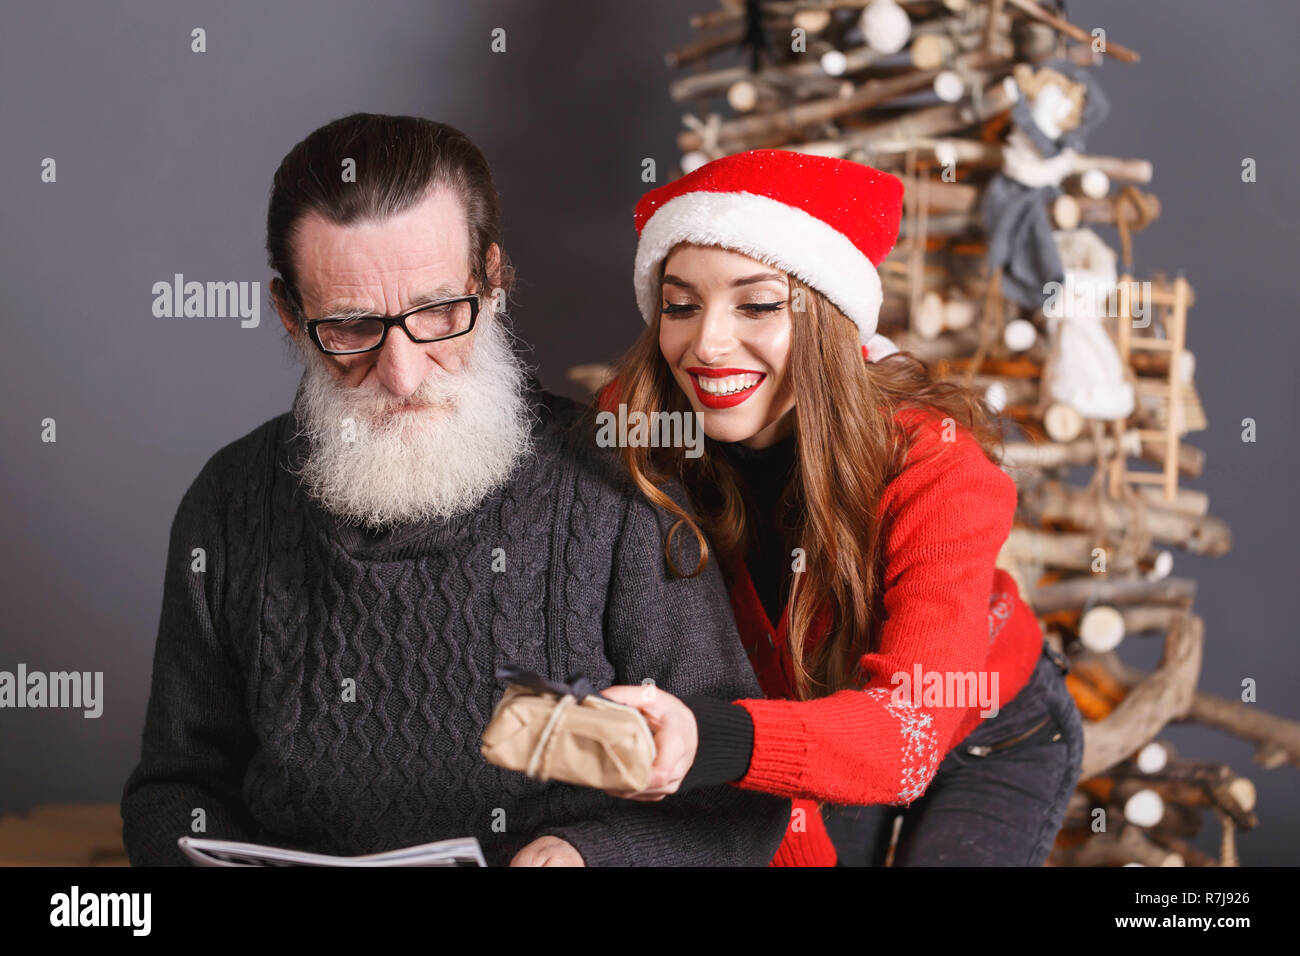 Die jungen langhaarigen Tochter im roten Pullover tragen Santa Hut lächelnd und gibt ein Weihnachtsgeschenk zu ihren bärtigen älteren Vati Brillen und graue Strickjacke, Silvester, Weihnachten, Feiertage, Souvenirs, Geschenke, Shopping, Rabatte, Geschäfte, Snow Maiden Santa Claus, Make-up, Frisur, Karneval. Stockfoto